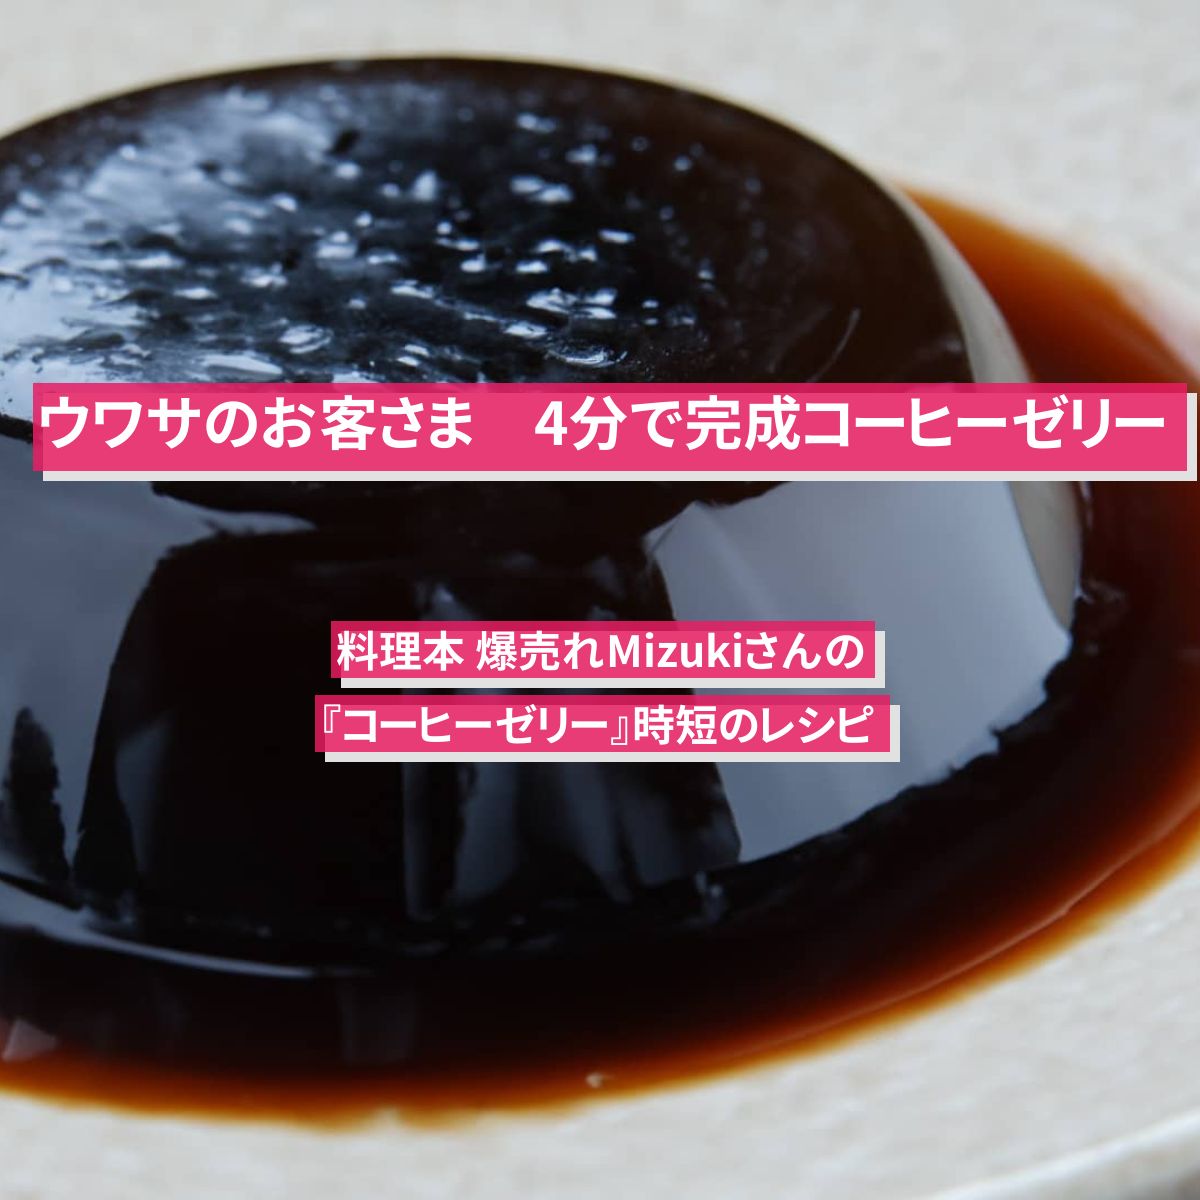 【ウワサのお客さま】4分で完成『コーヒーゼリー』料理本 爆売れMizukiさんの時短のレシピ